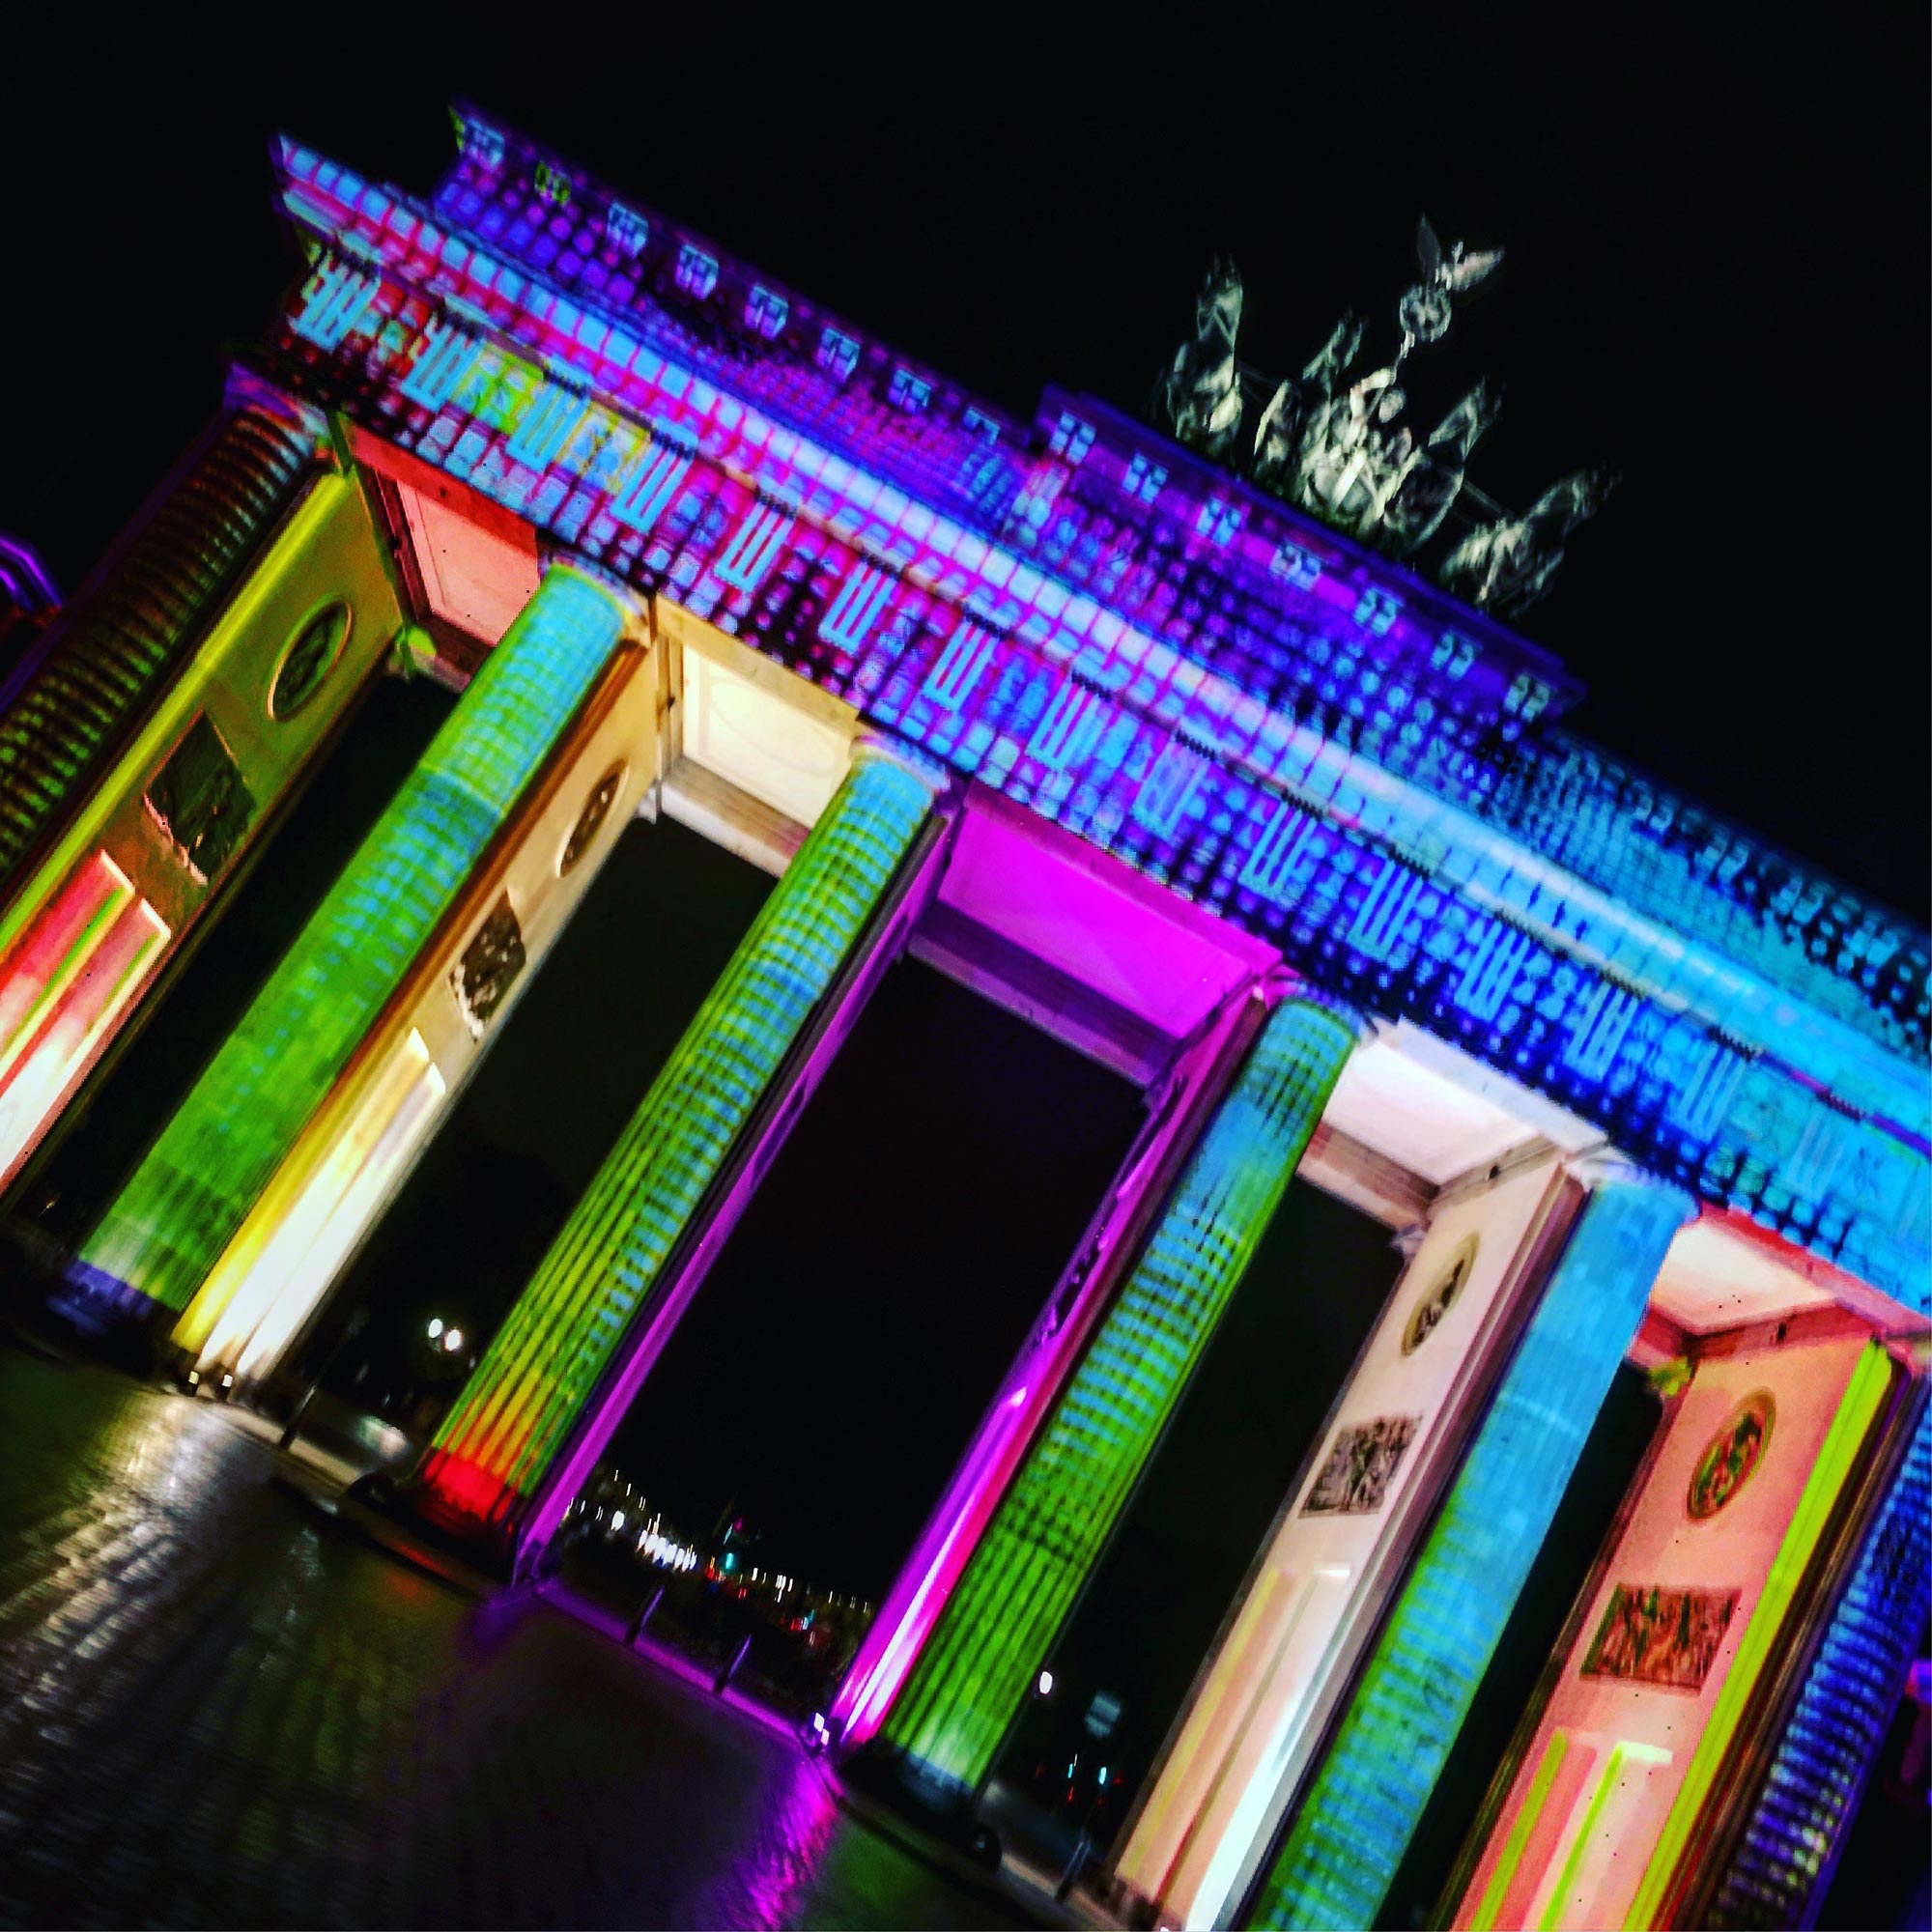 Festival of Lights: Brandenburger Tor